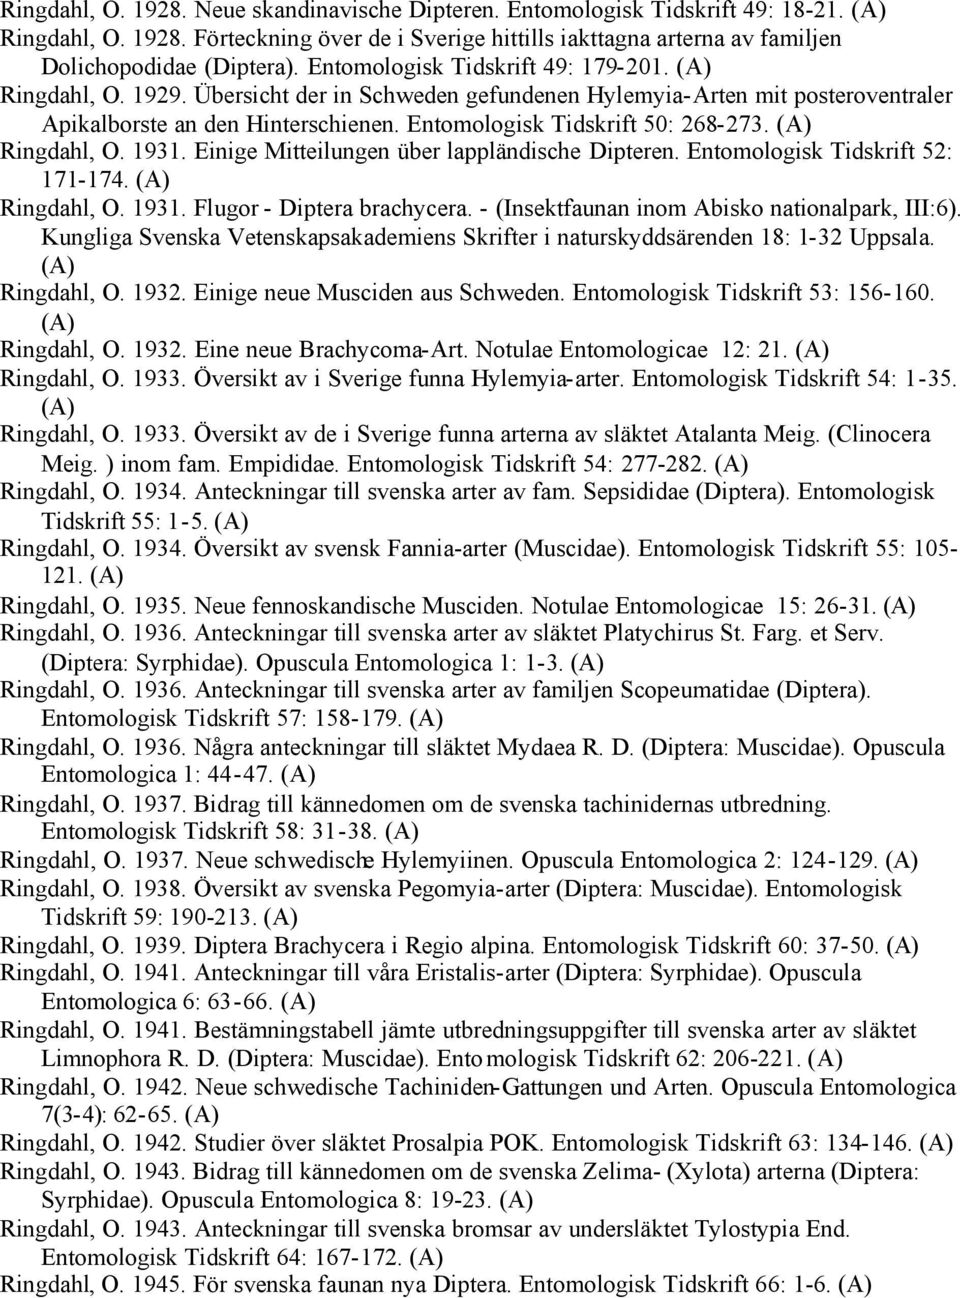 Ringdahl, O. 1931. Einige Mitteilungen über lappländische Dipteren. Entomologisk Tidskrift 52: 171-174. Ringdahl, O. 1931. Flugor - Diptera brachycera.